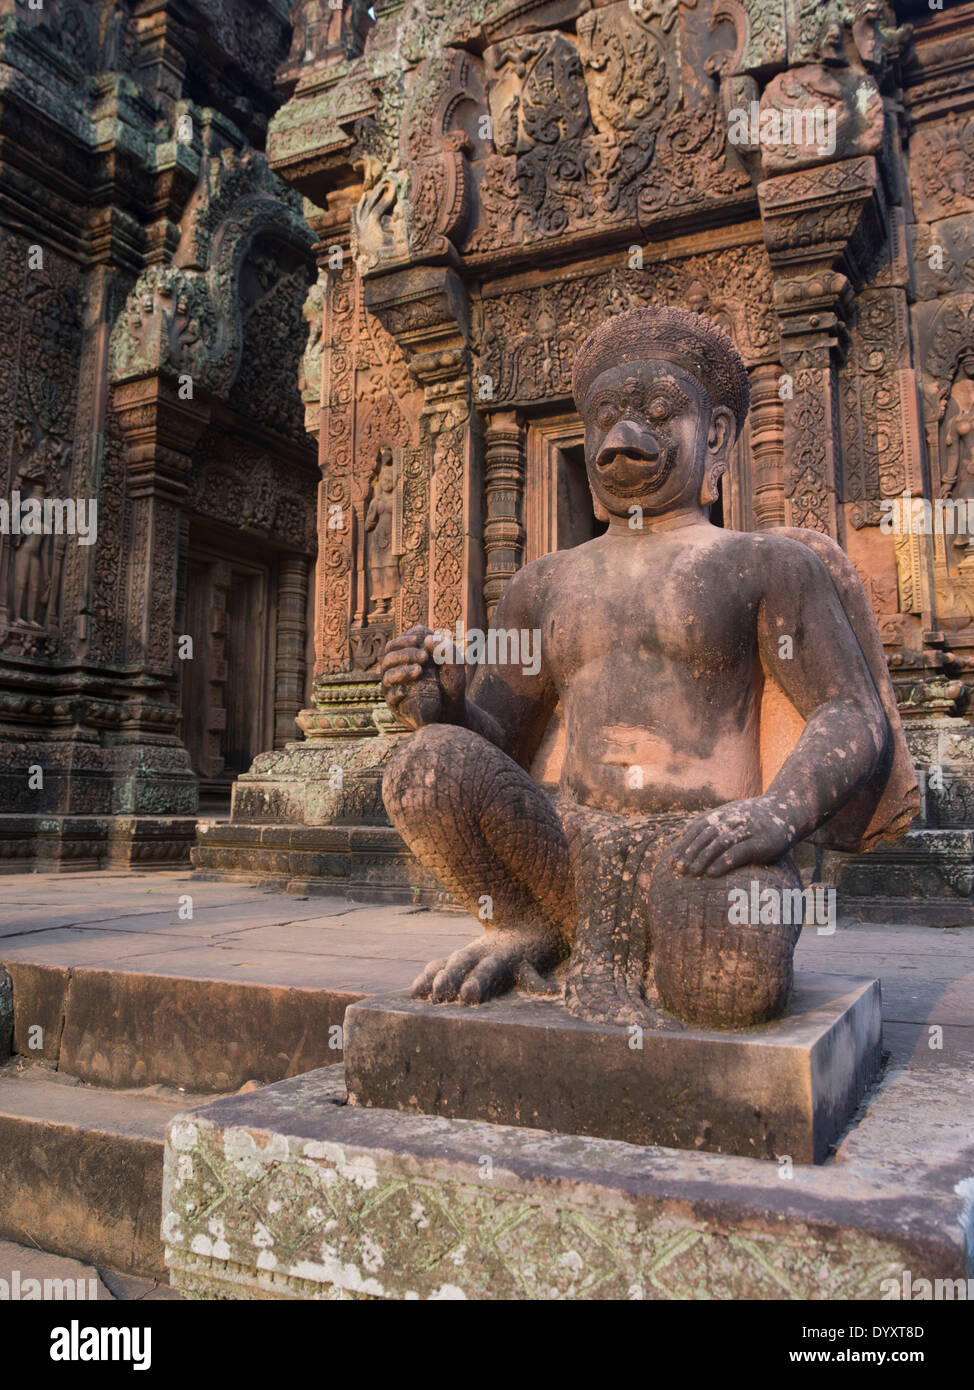 Les gardiens du temple de Banteay Srei Temple Hindou dédié à Shiva. Siem Reap, Cambodge Banque D'Images